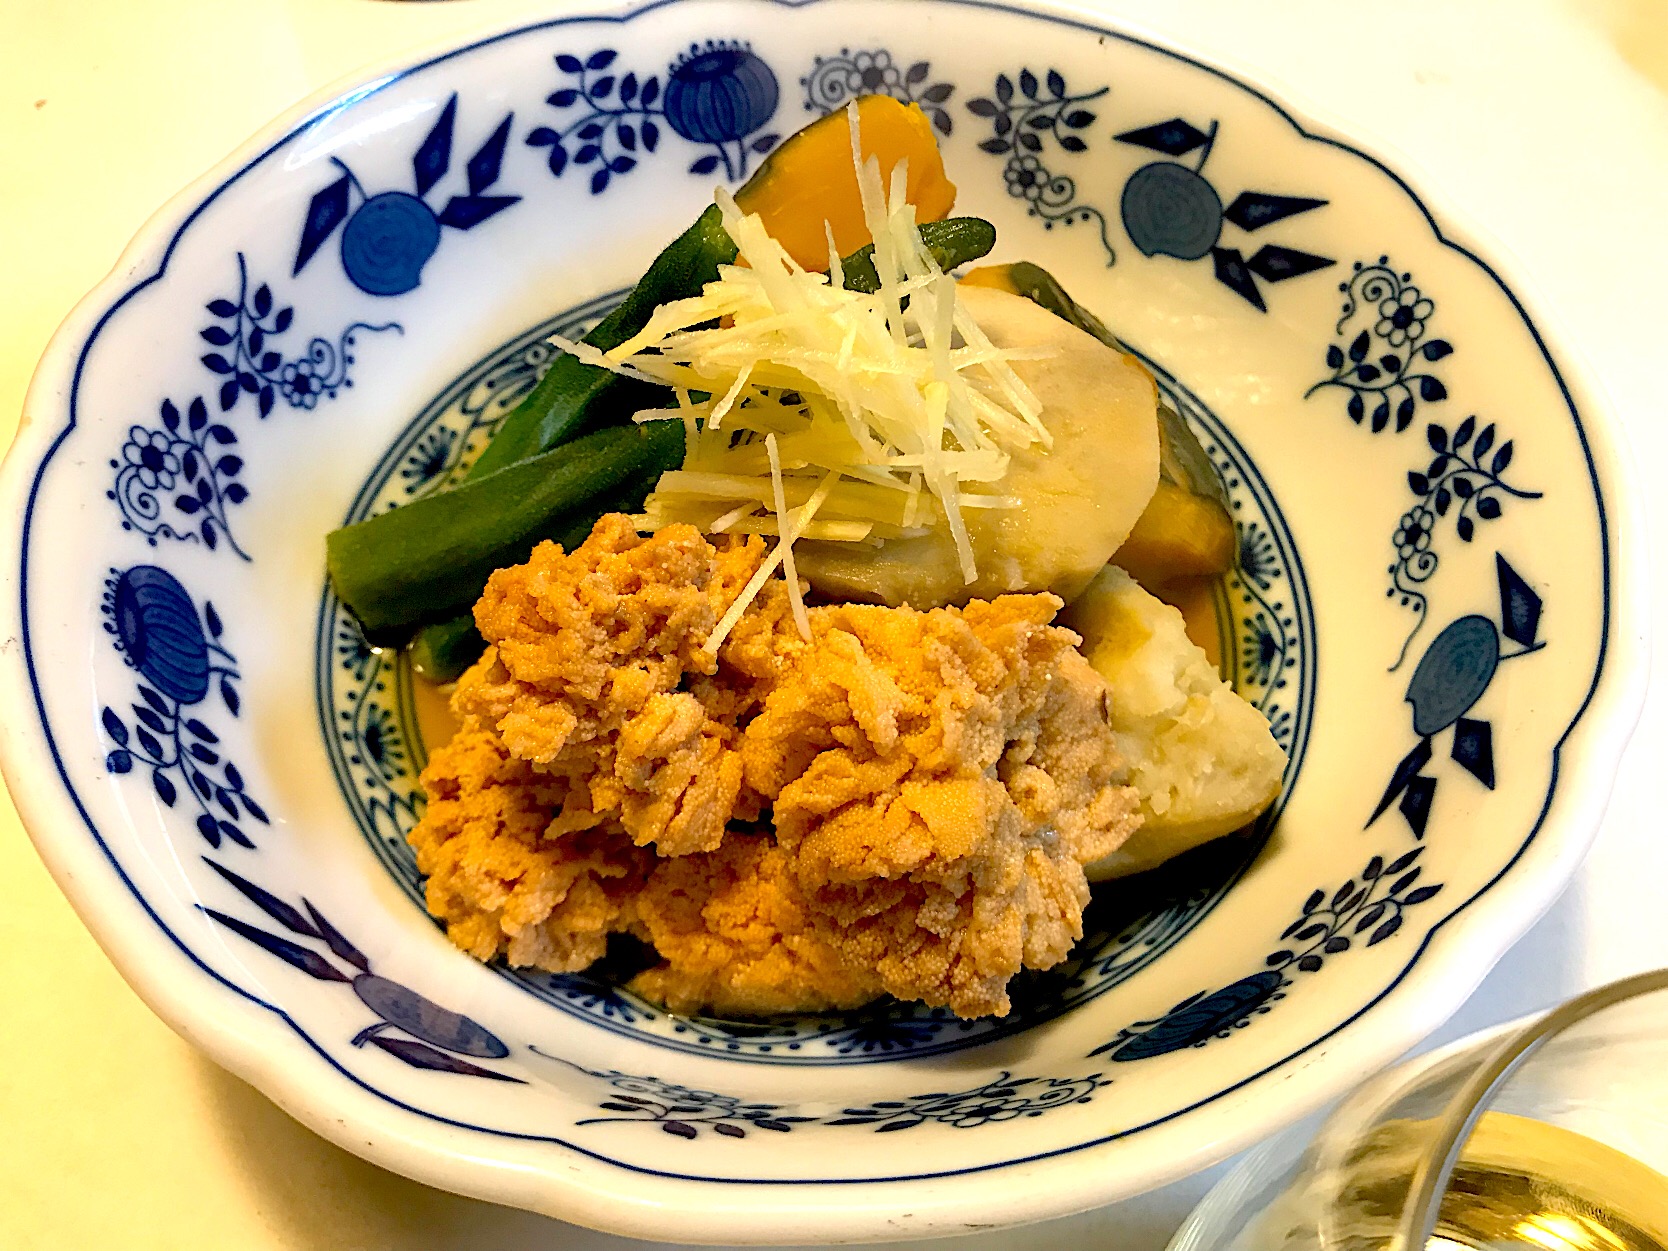 Sdの料理を見て食べたくなった 関西では鯛の子 本当はスケソウダラの子 煮 Sasaちゃんこ Snapdish スナップディッシュ Id Kn1vua